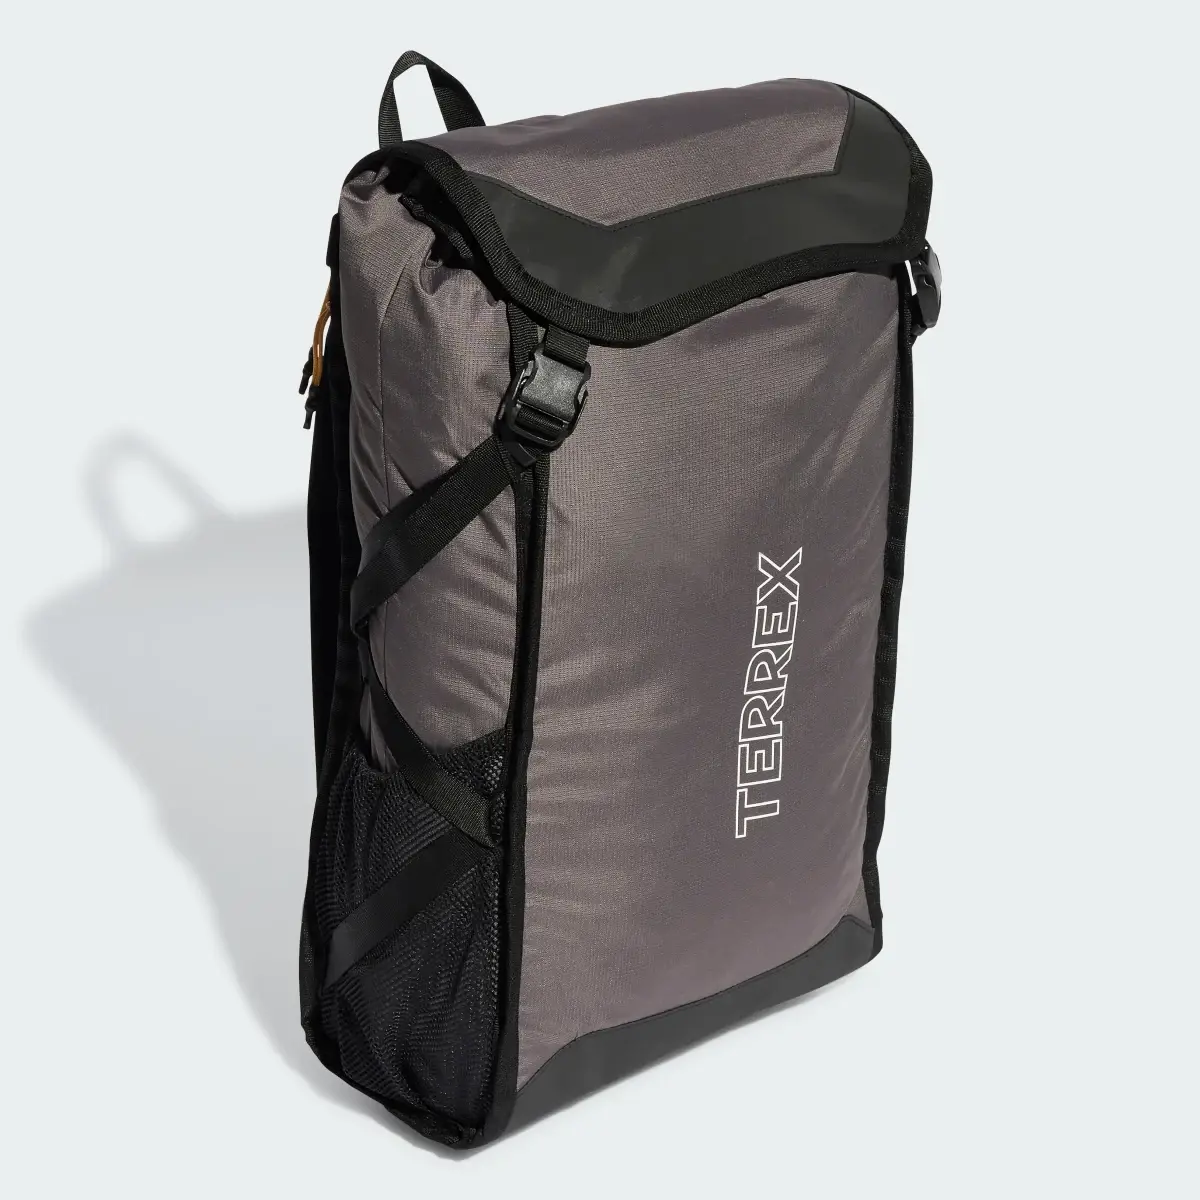 Adidas Terrex Backpack. 2